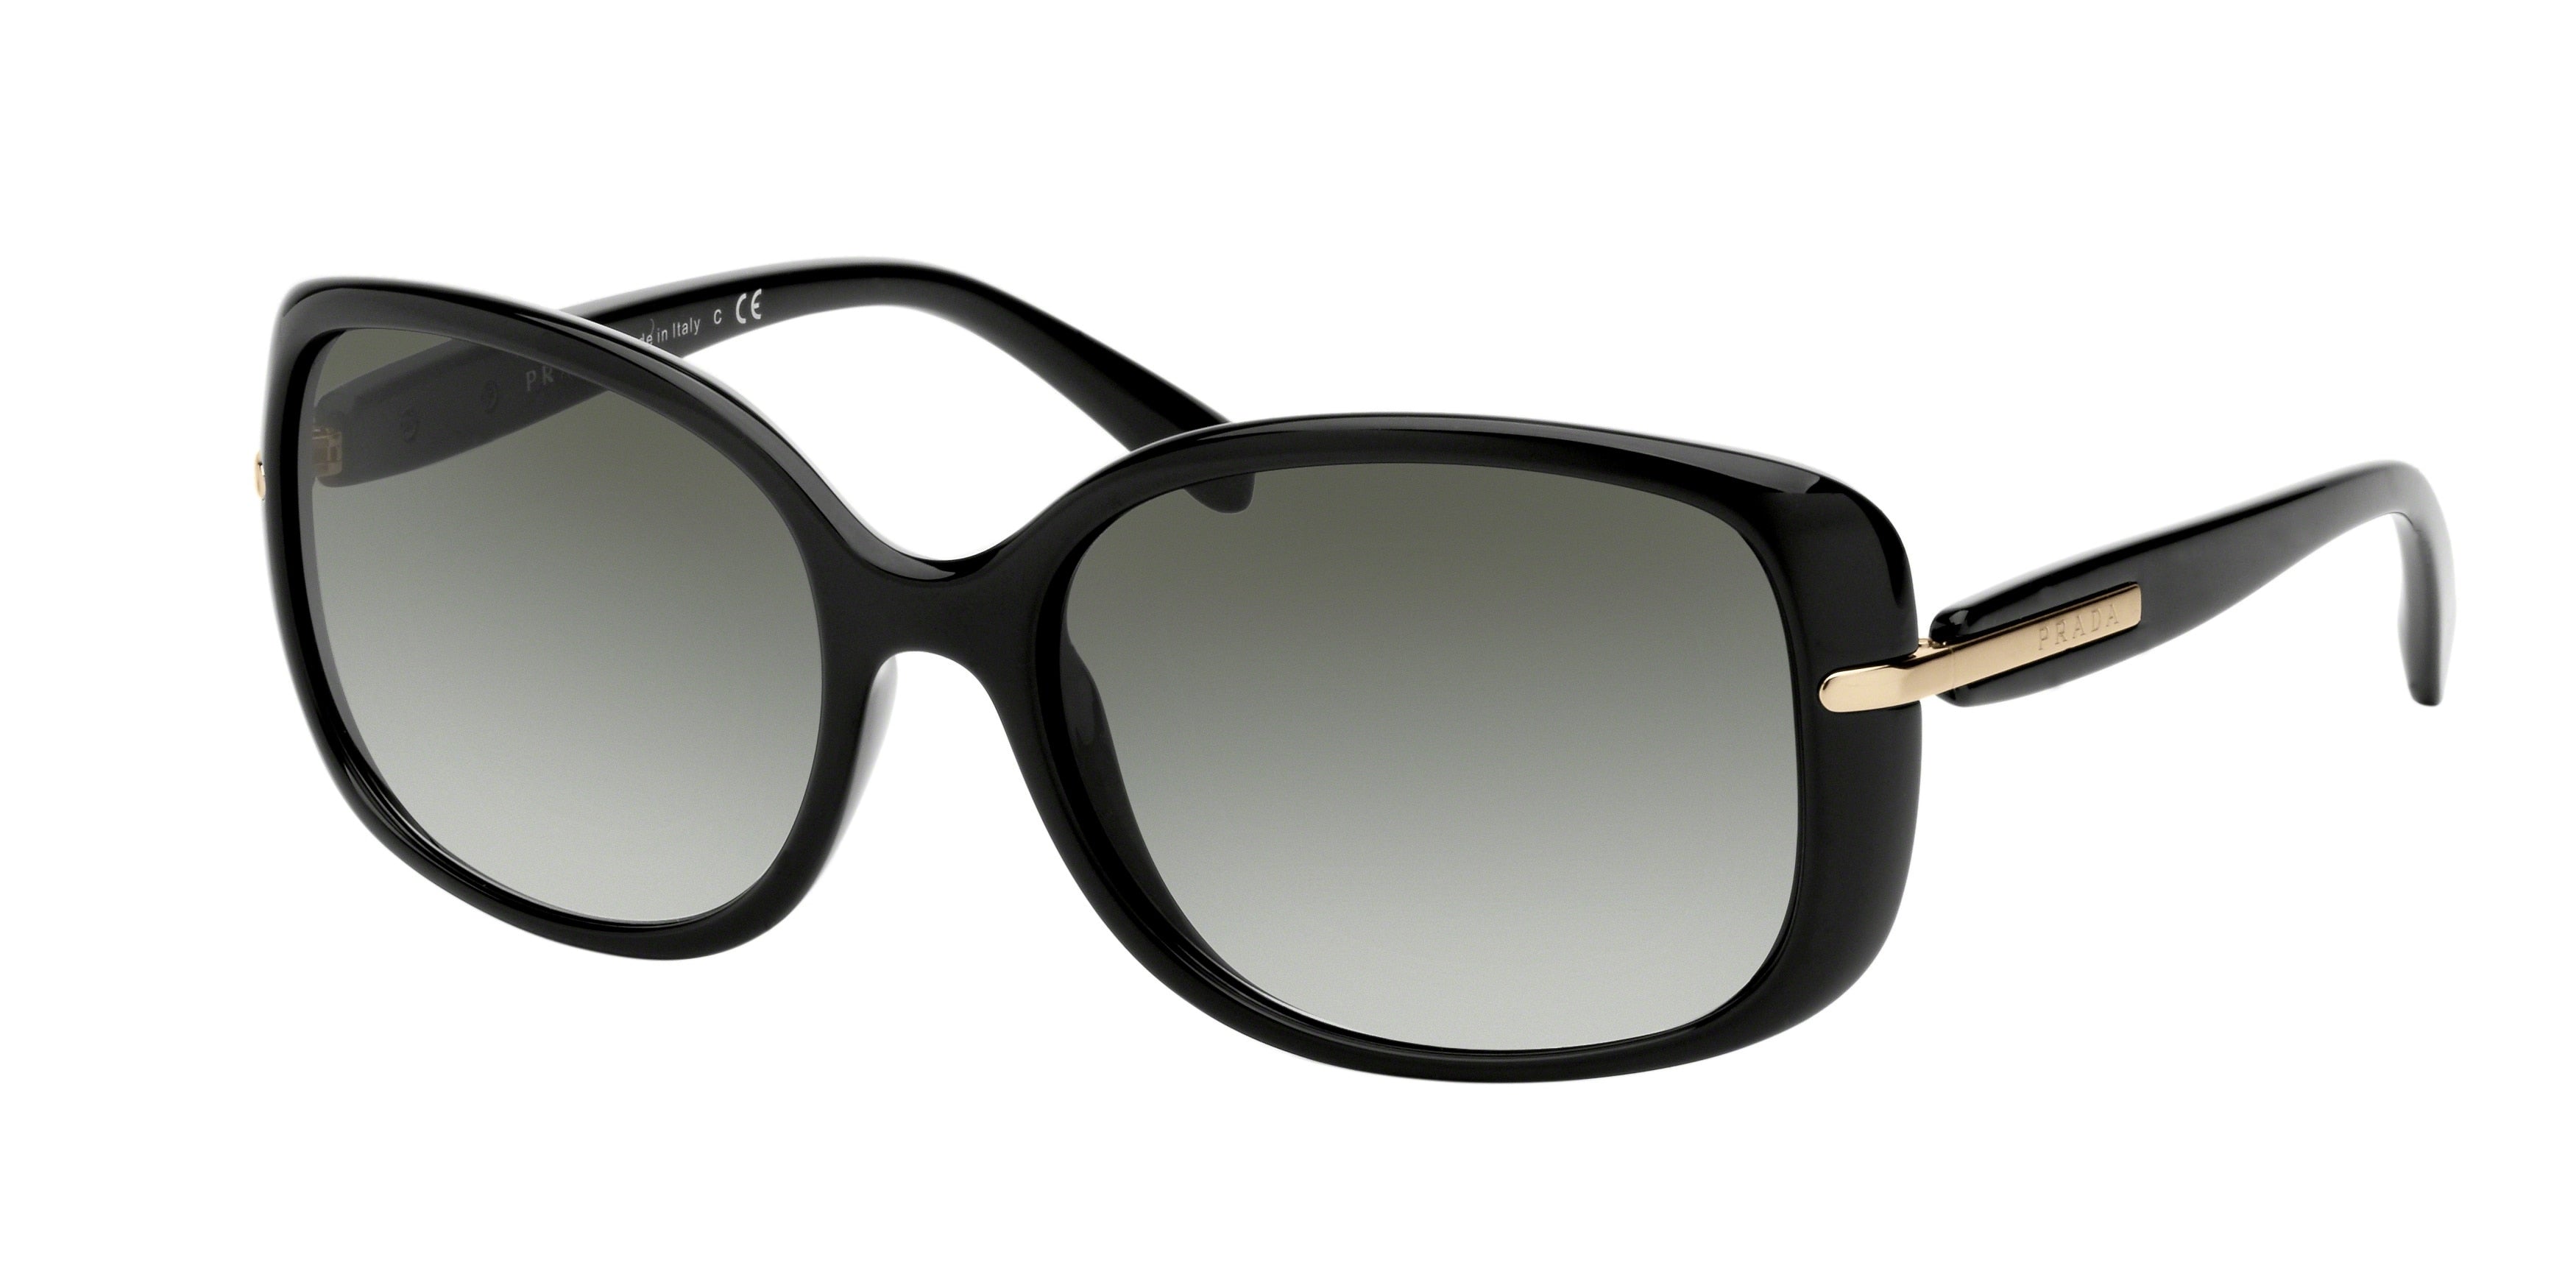 Prada CONCEPTUAL PR08OS Rectangle Sunglasses  1AB0A7-Black 56-130-17 - Color Map Black